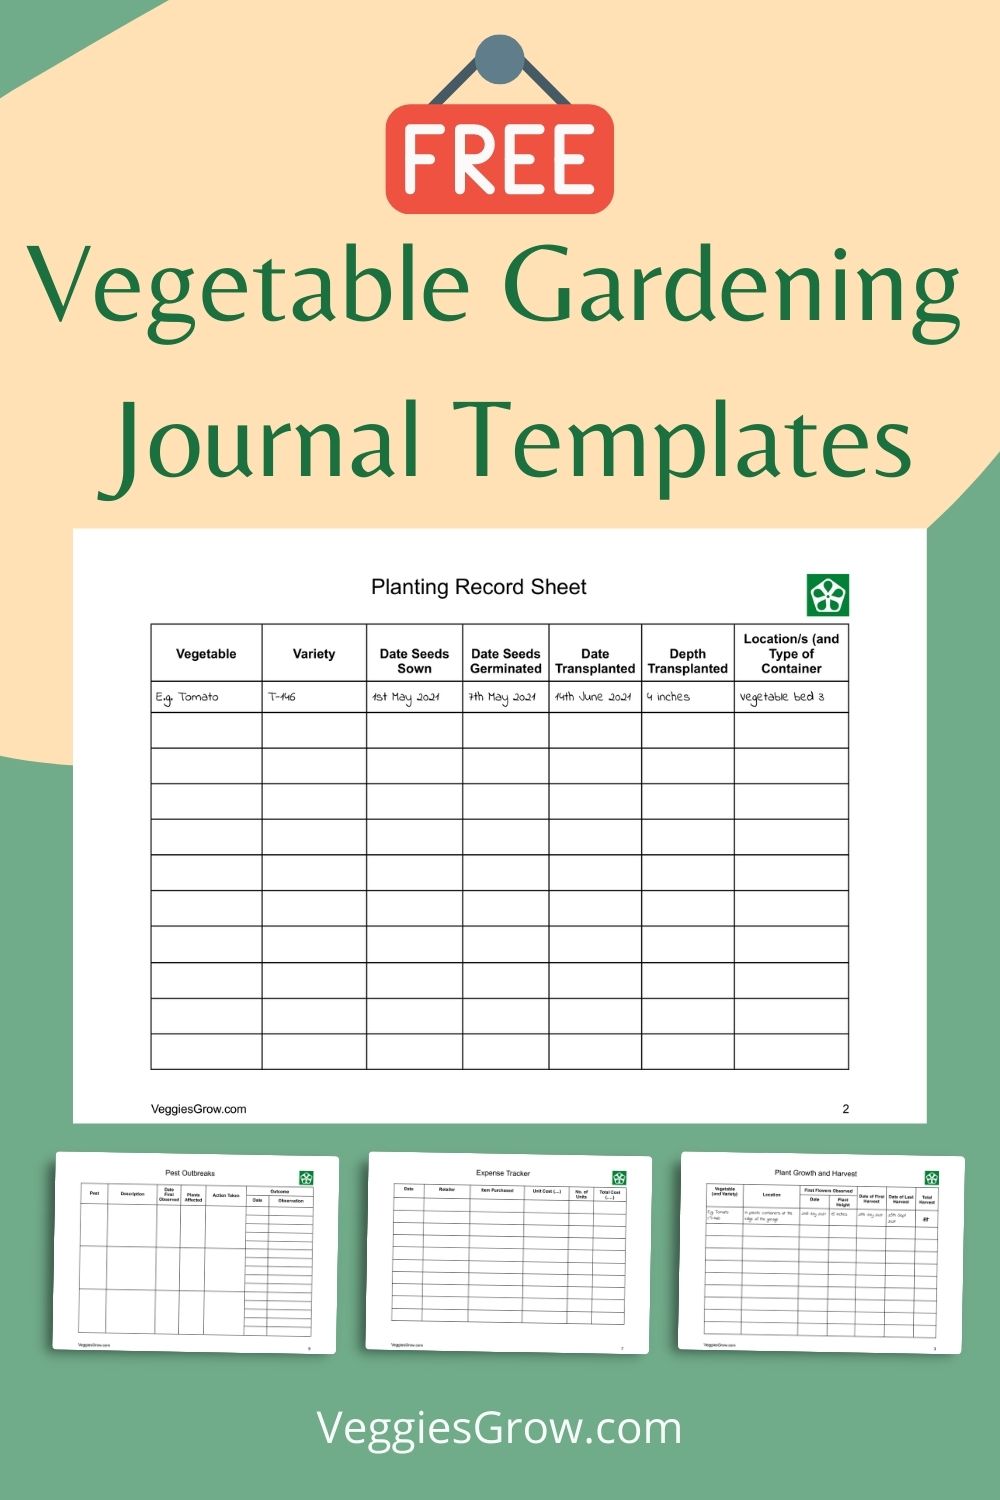 Download your FREE Vegetable Garden Journal Templates Veggies Grow